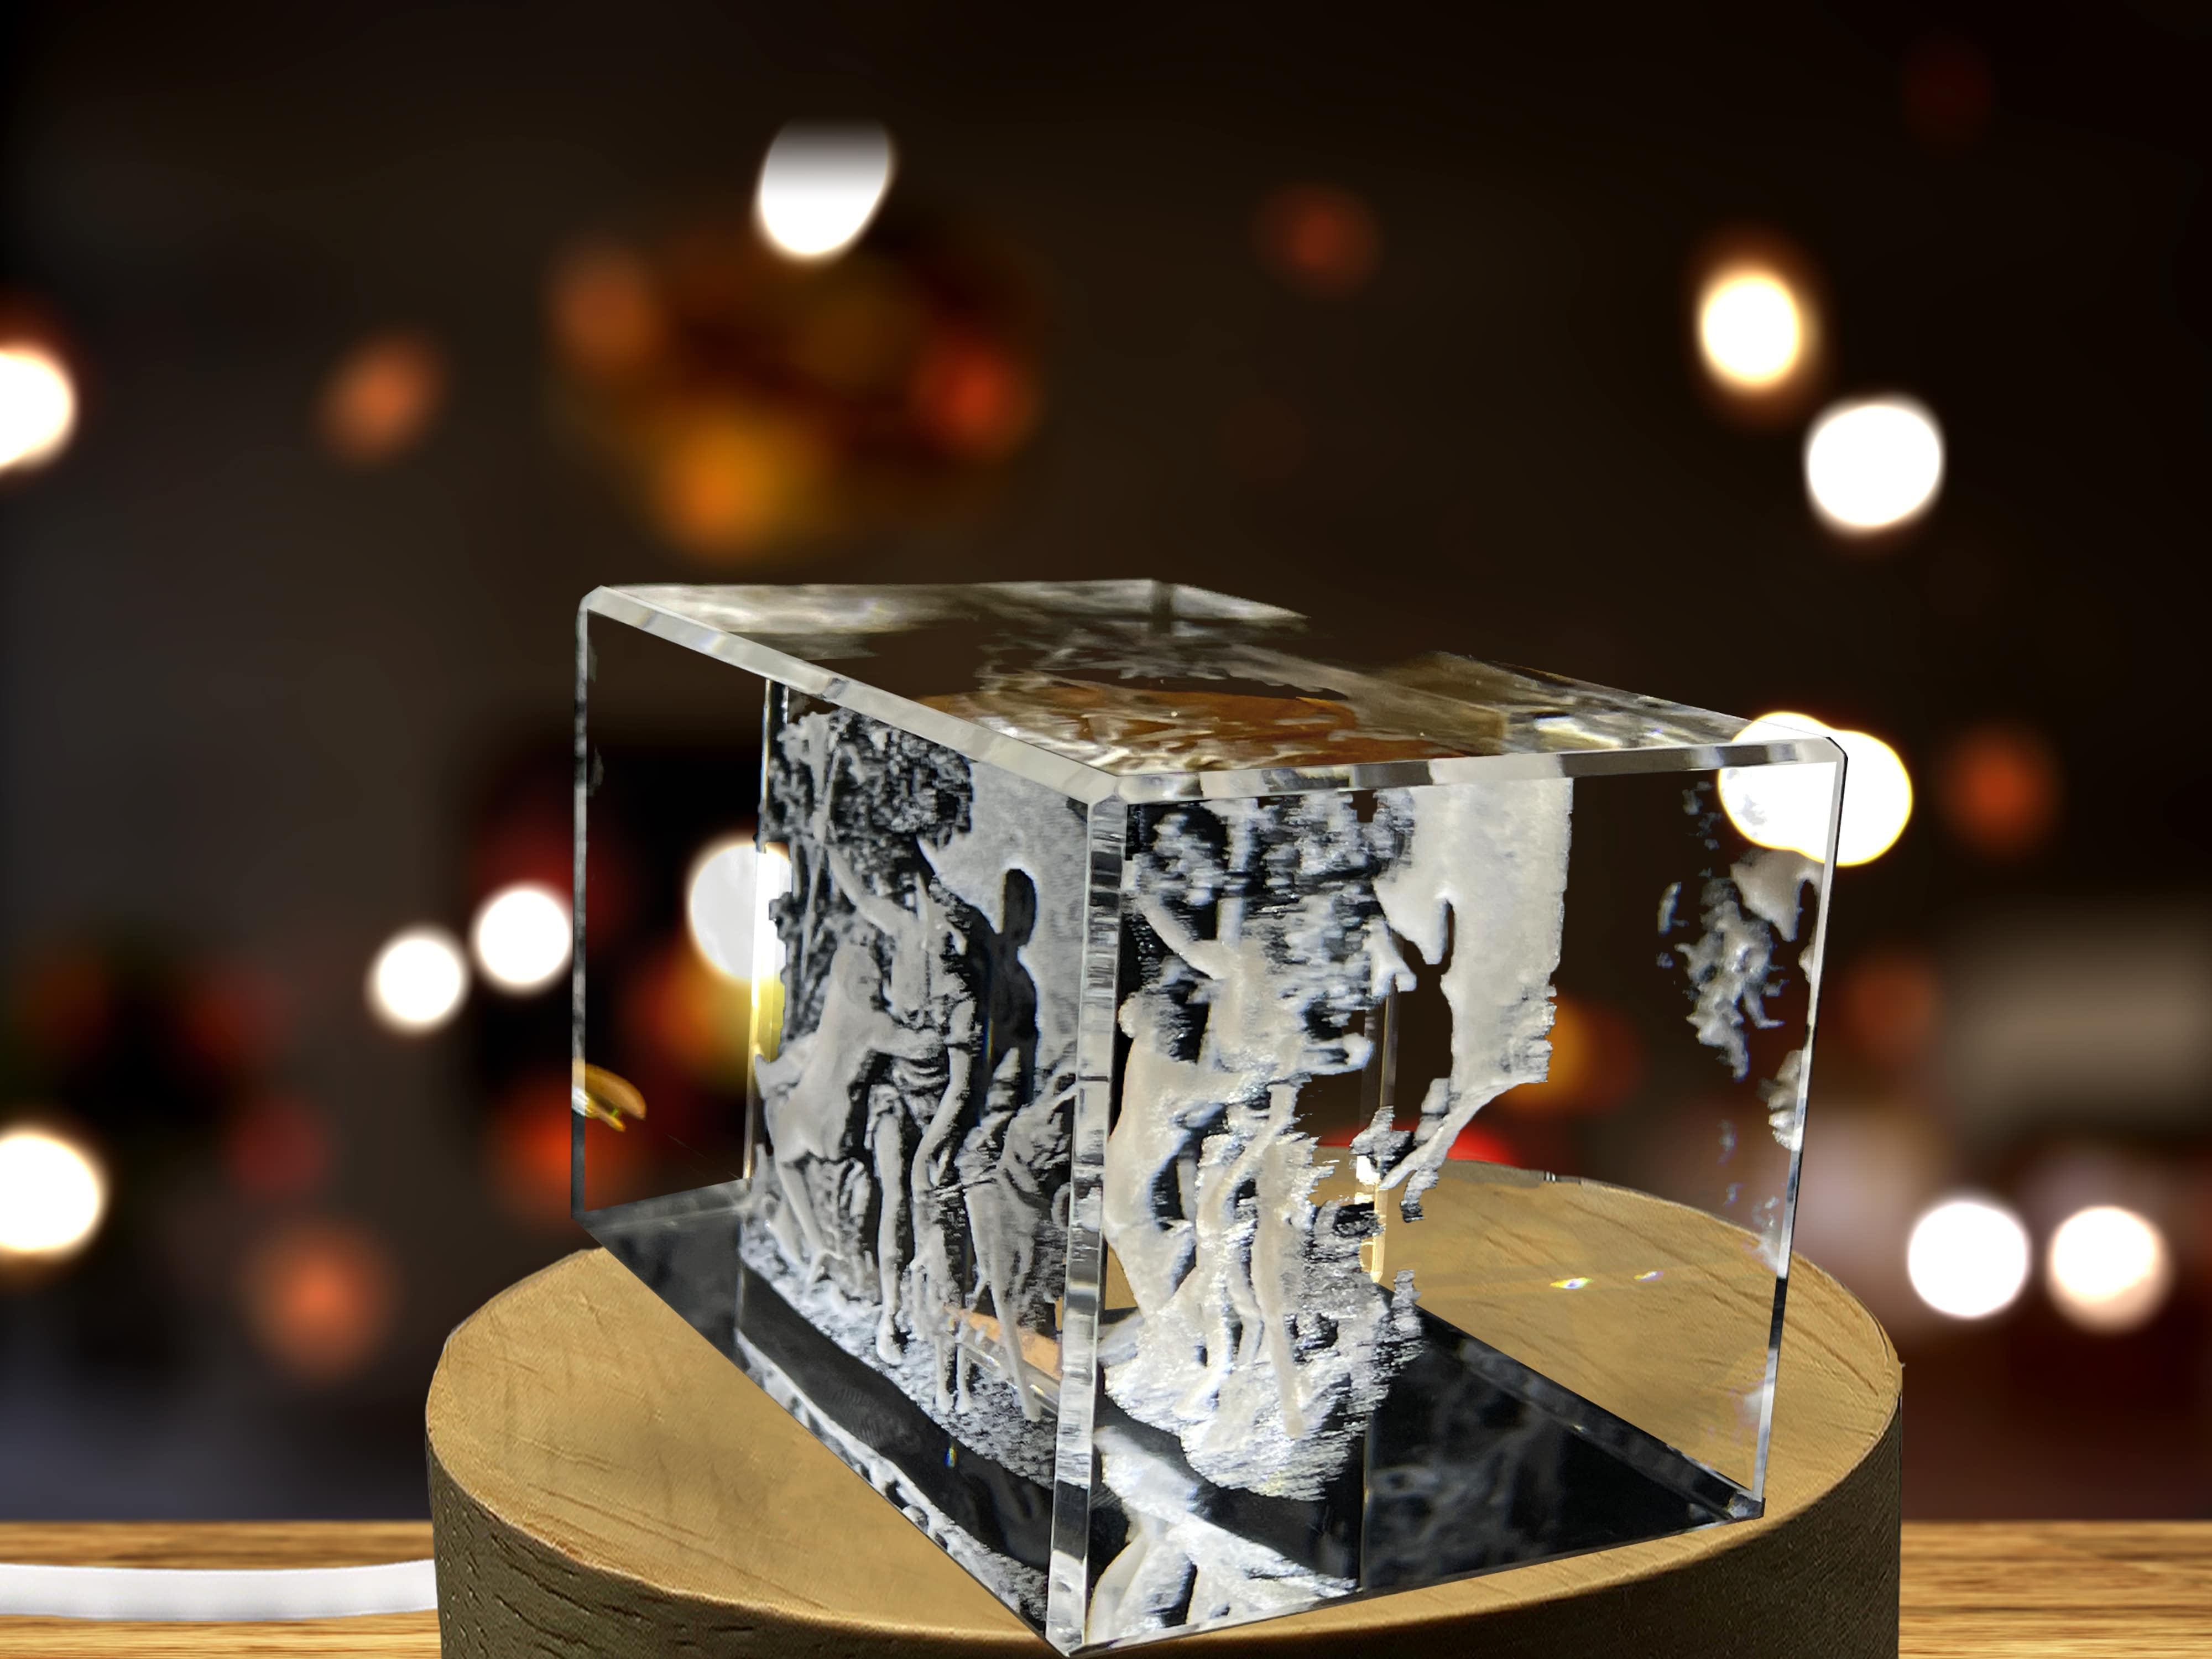 Aphrodite 3D Engraved Crystal Keepsake/Gift/Decor/Collectible/Souvenir A&B Crystal Collection